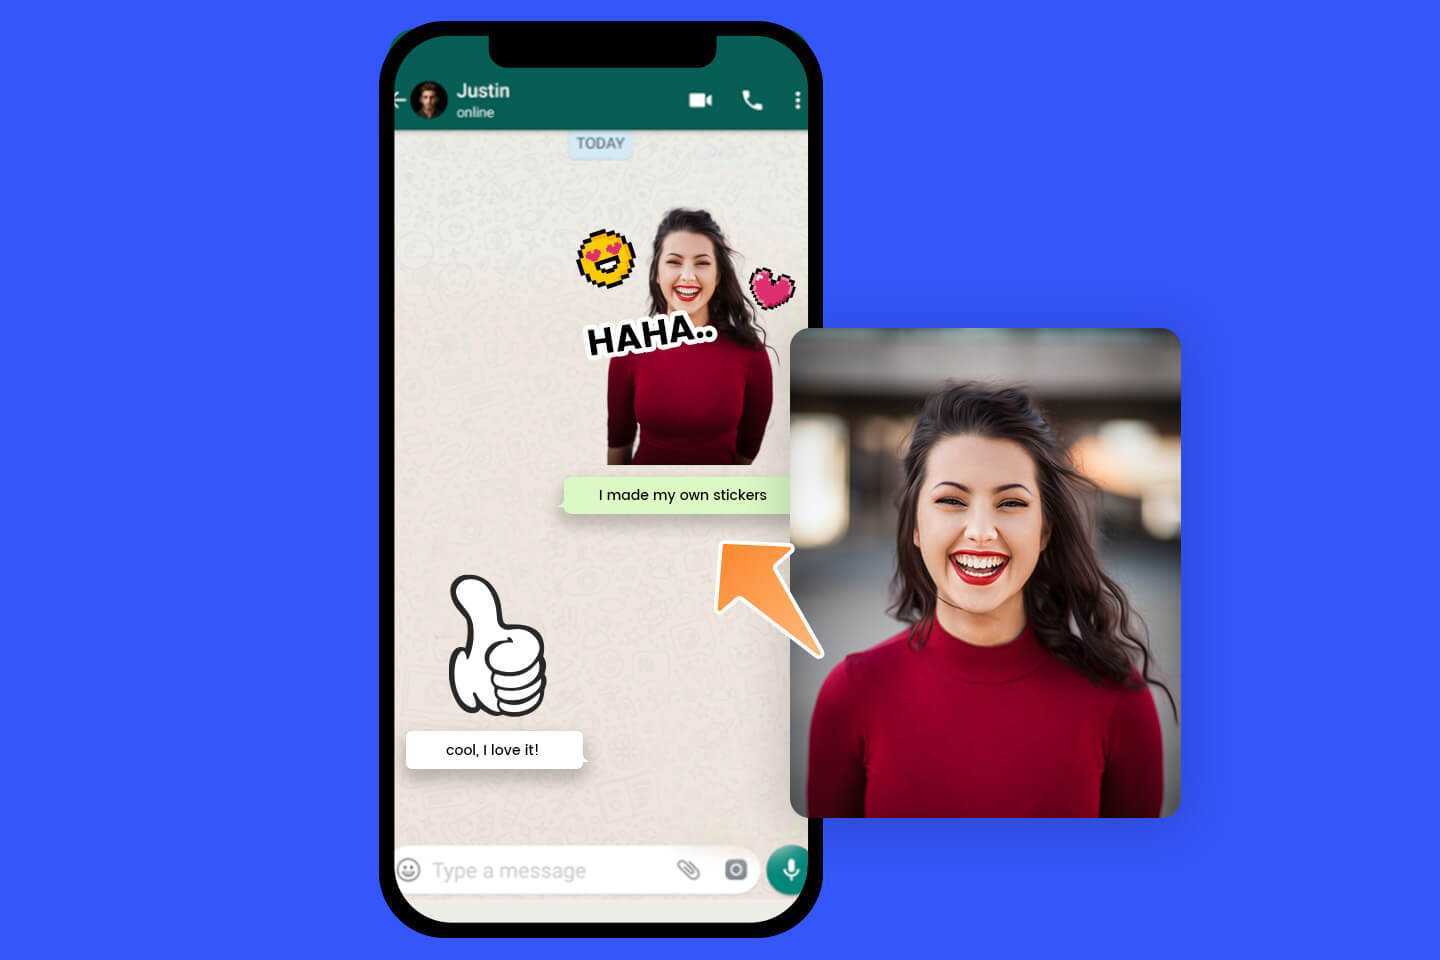 Converta uma foto de uma menina sorridente em uma figurinha de Whats App usando o gerador de figurinhas para Whatsapp da Fotor